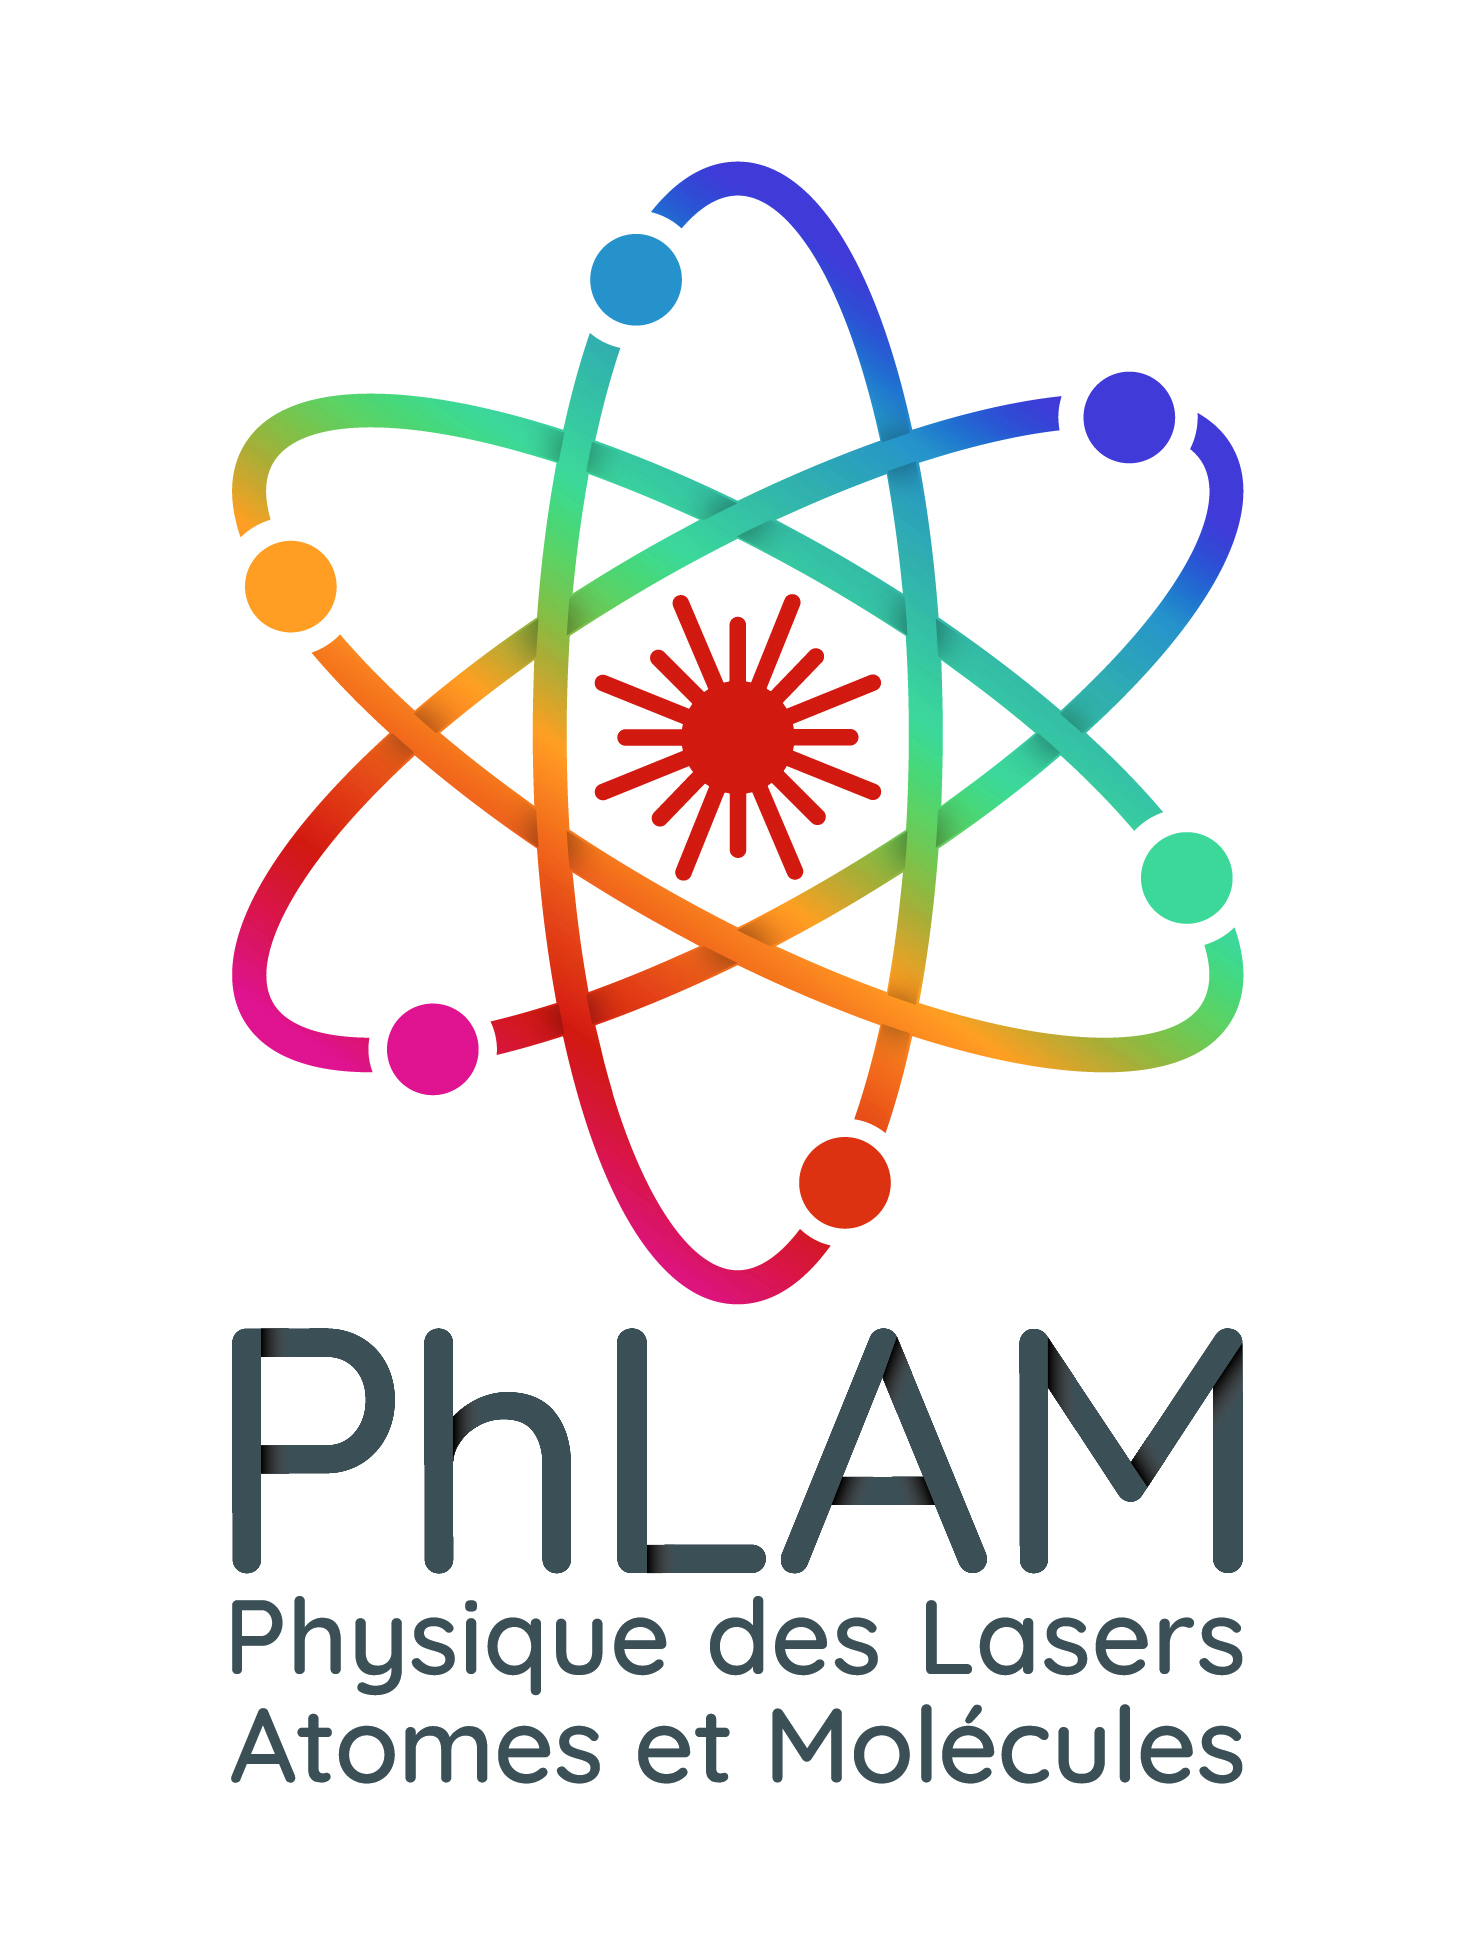 PhLAM